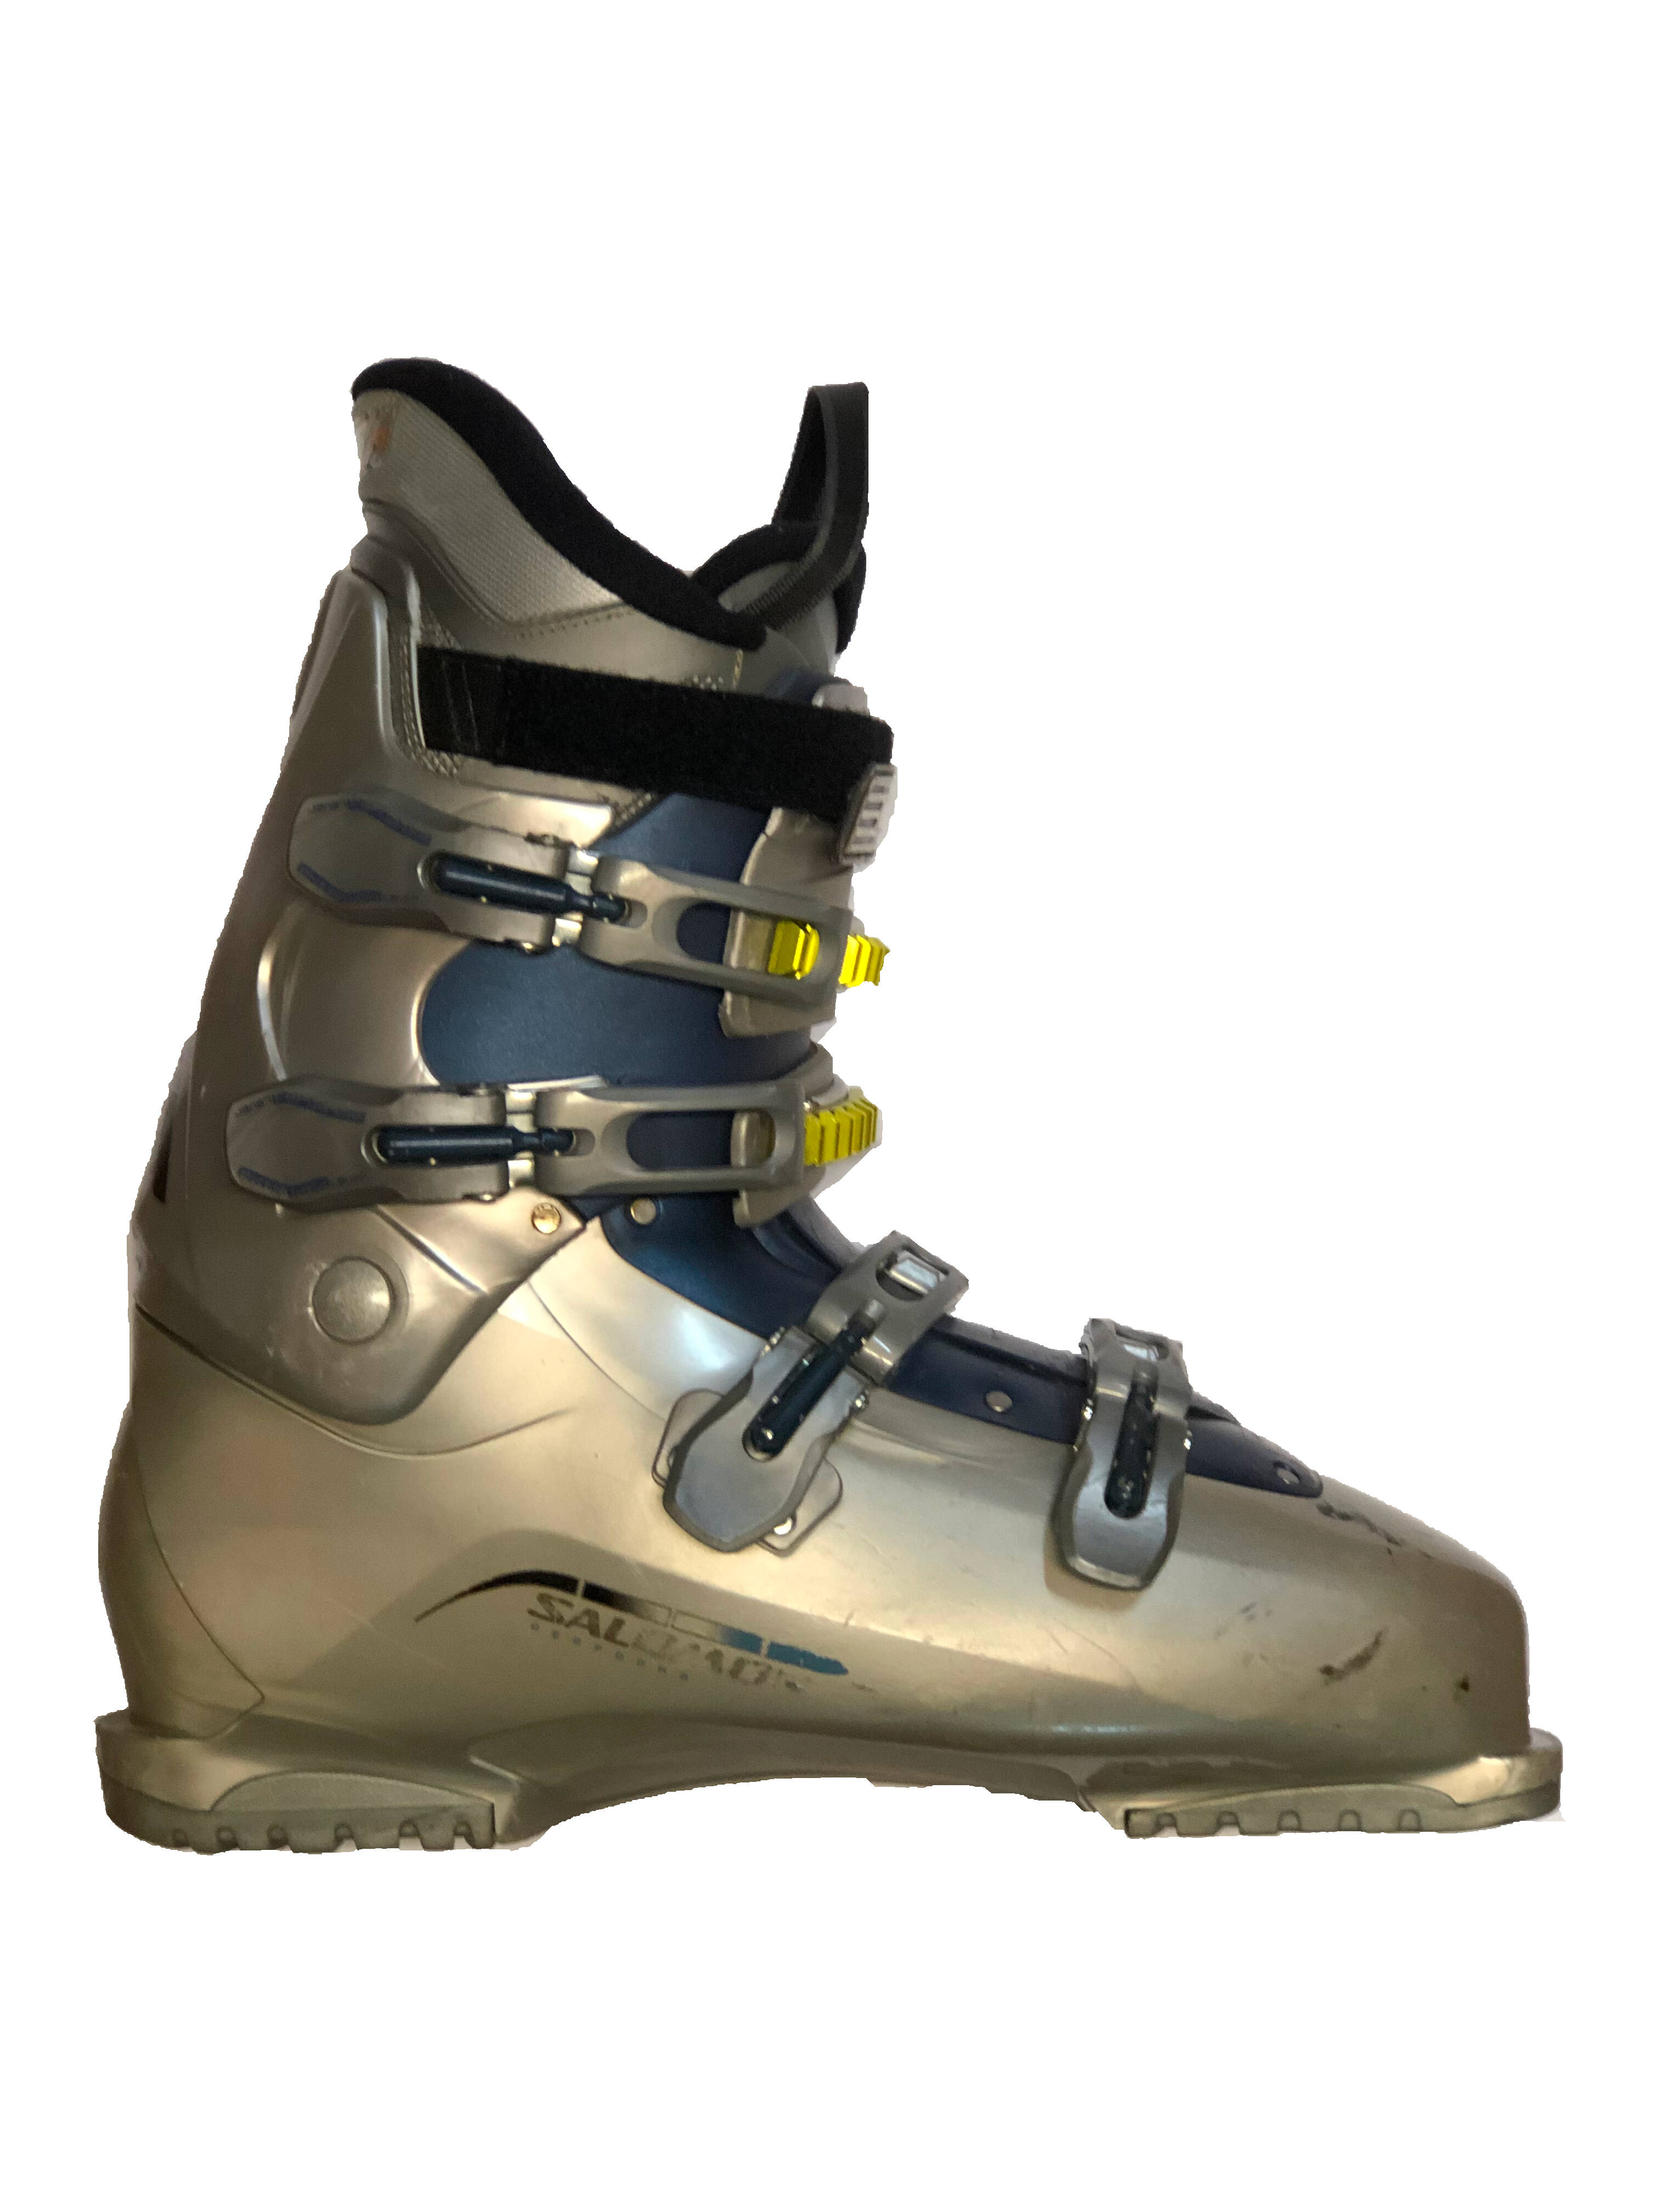 Używane buty narciarskie SALOMON 26,5 / 307mm rozmiar 41 :: Sklep Sportowy  - outlet sportowy, koncówki kolekcji, wyprzedaże, narty, deski, wiązania,  sprzet narciarski, buty sportowe